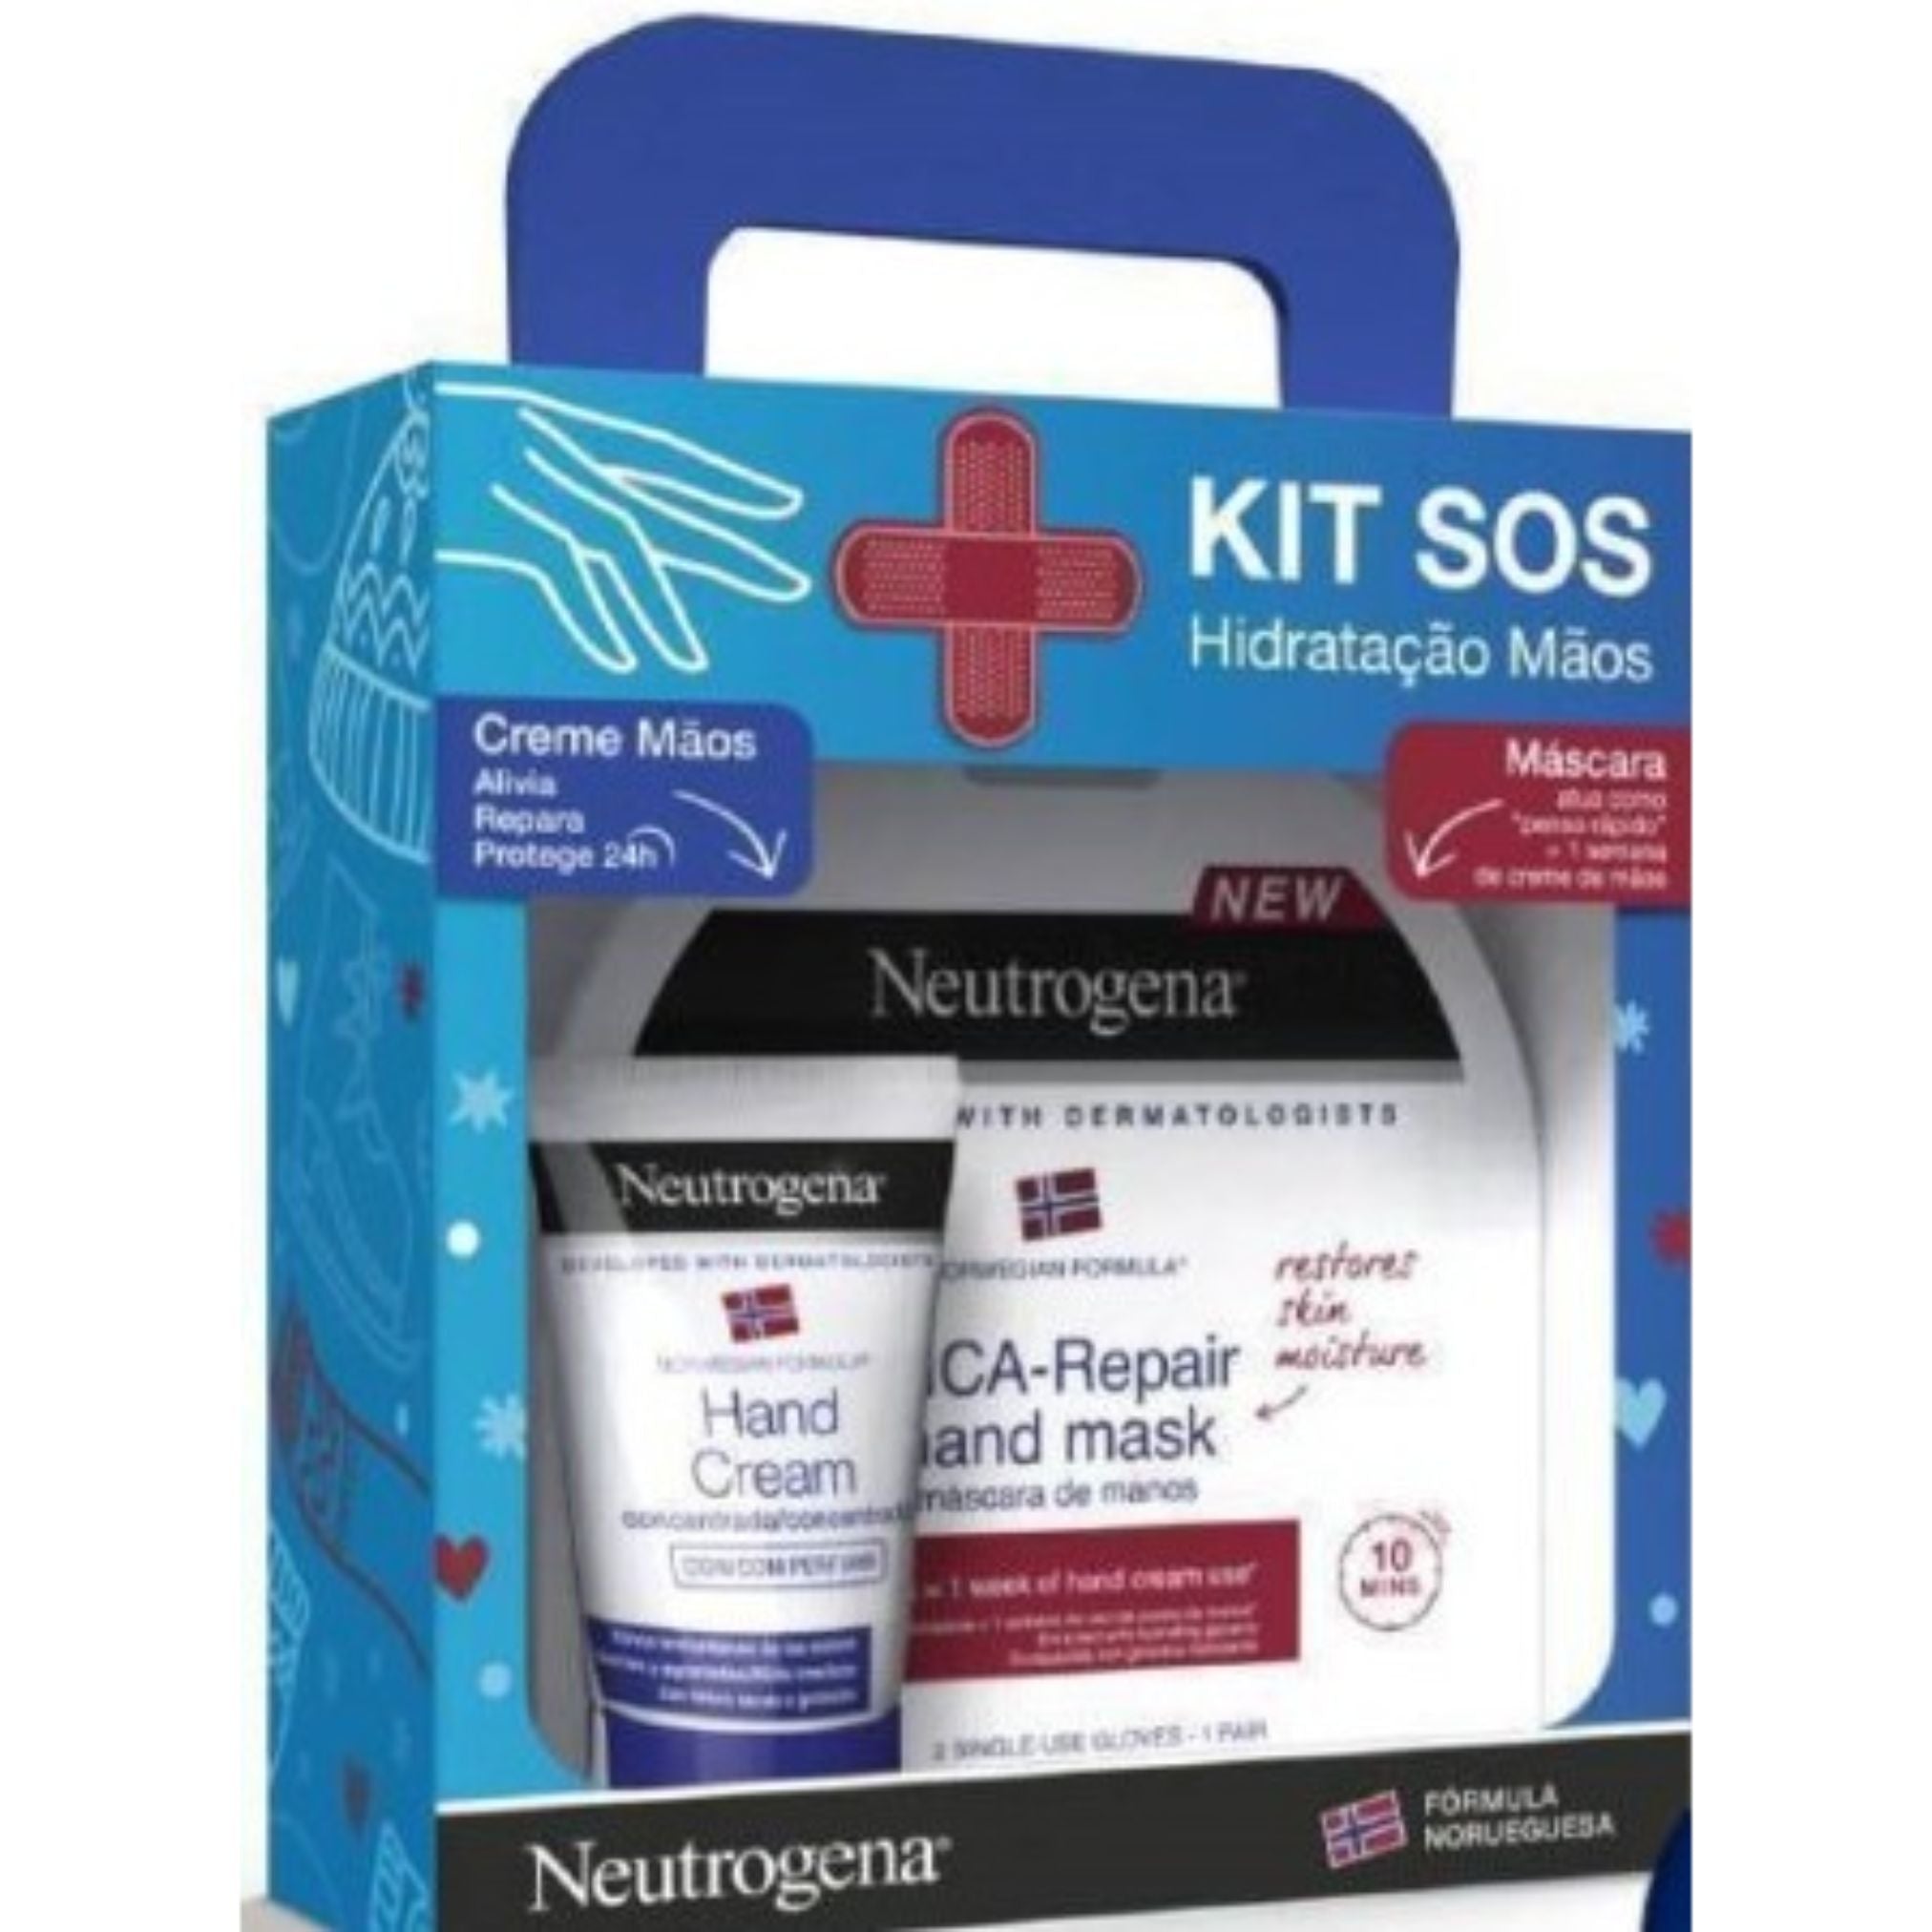 Neutrogena Pack Promocional: Neutrogena Máscara de Mãos Cica-Repair x1 + Neutrogena Creme Mãos Concentrado com Perfume 40ml